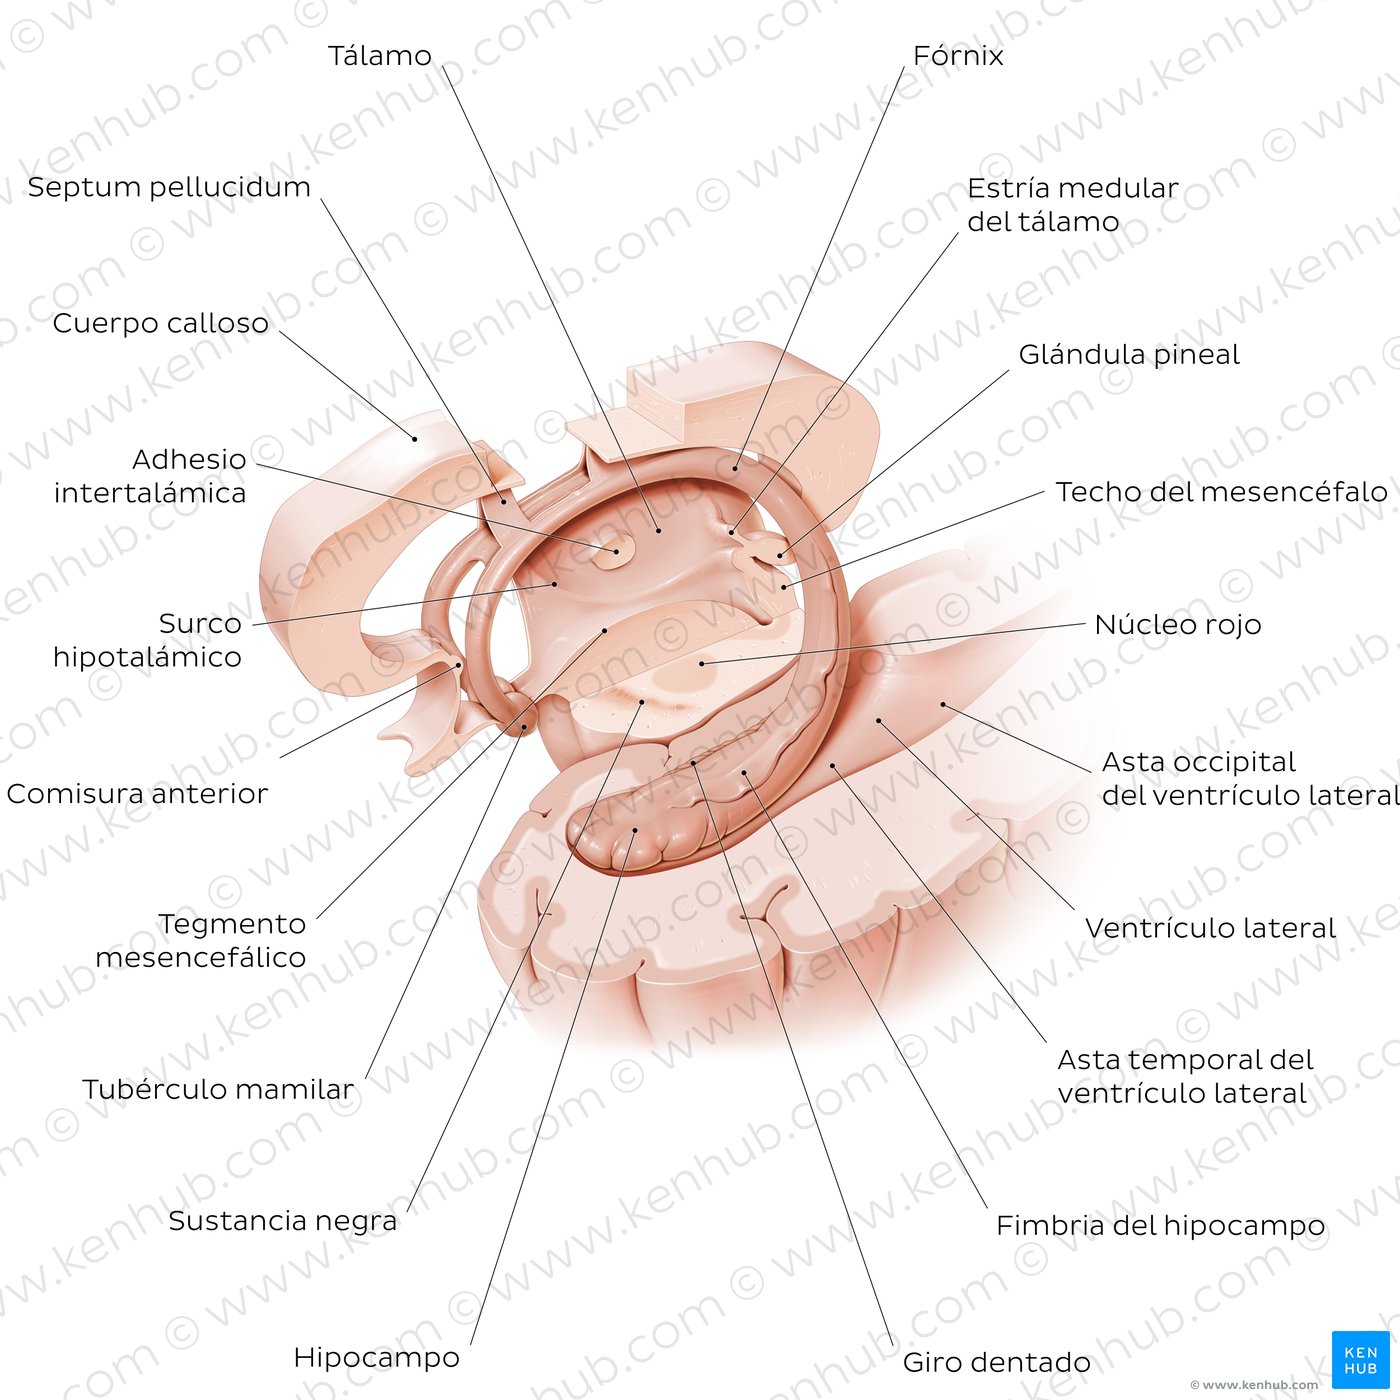 Hipocampo y fórnix